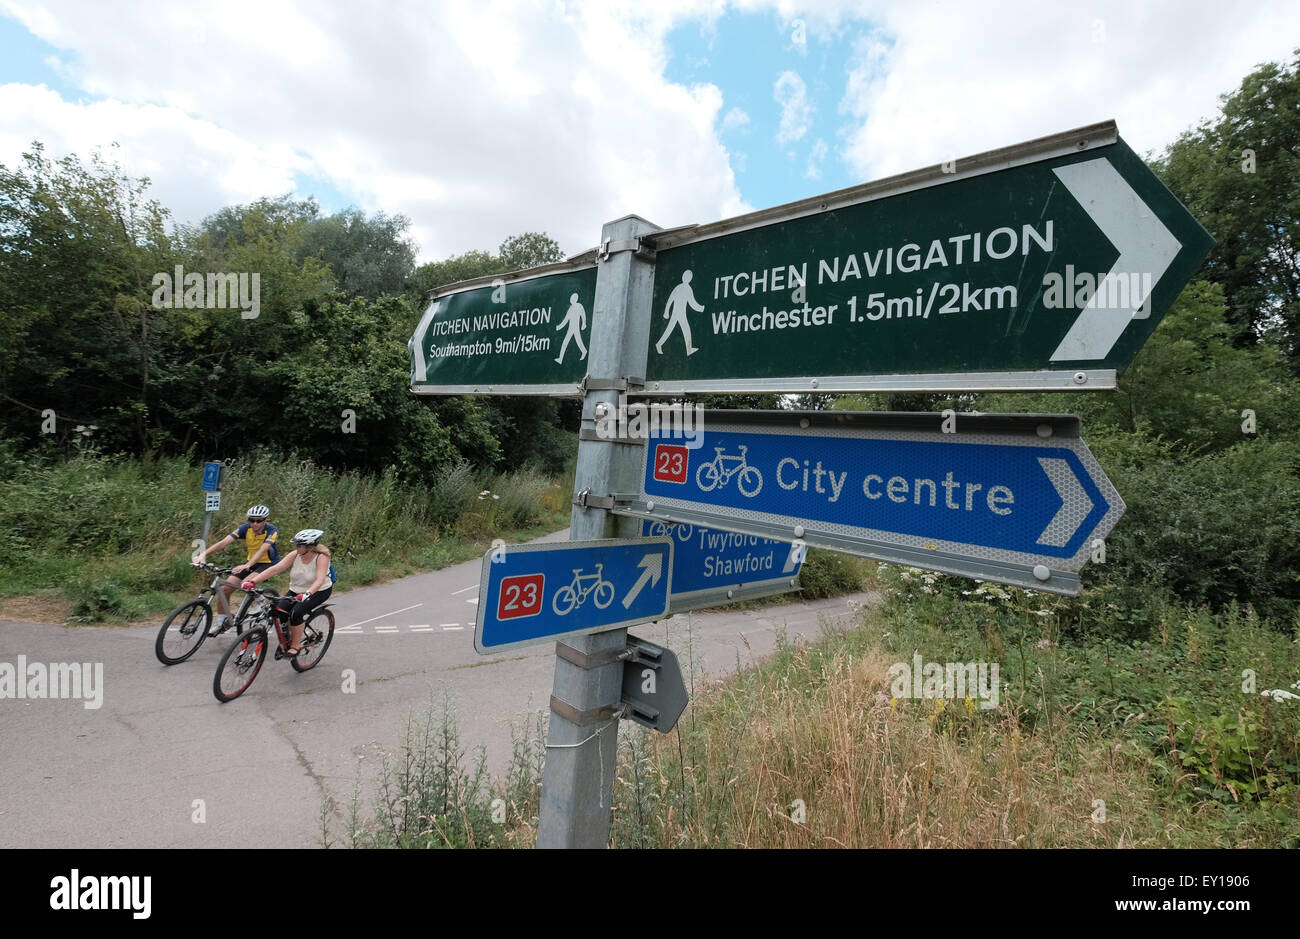 Navigation et orientation Itchen sentier national Cycle Network route 23 sign sur la route à Winchester Banque D'Images